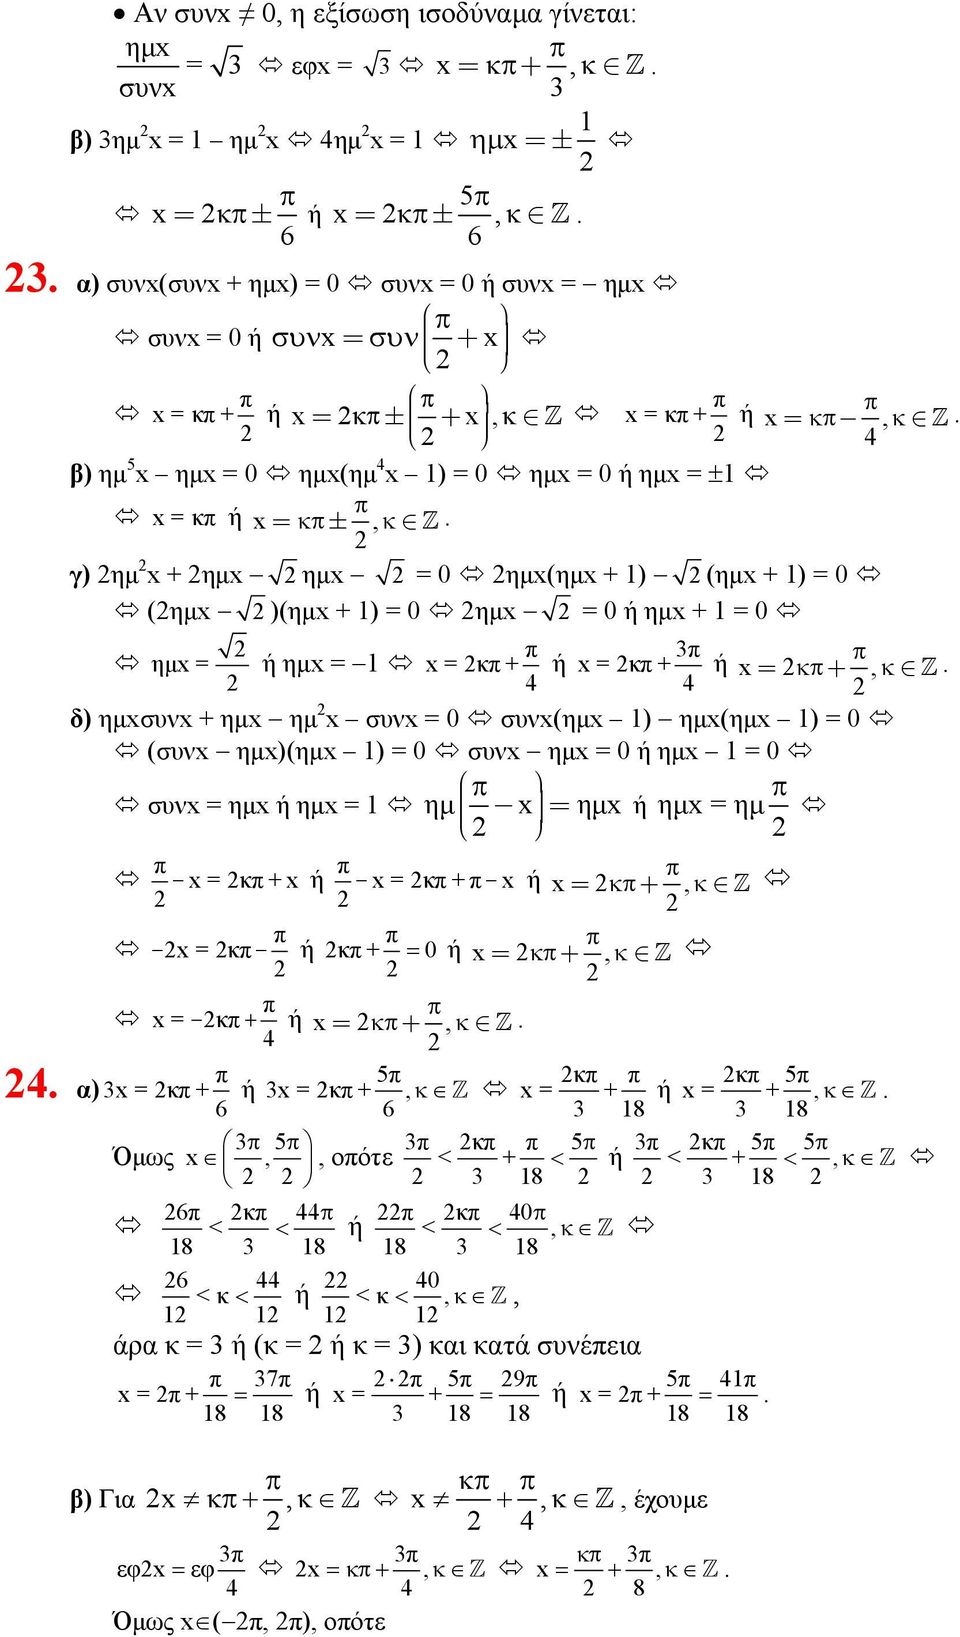 α) ηµx = ή ηµx = x=κ + ή x=κ + ή x= κ +, κ Z 4 4 δ) ηµxσυνx + ηµx ηµ x συνx = 0 συνx(ηµx ) ηµx(ηµx ) = 0 (συνx ηµx)(ηµx ) = 0 συνx ηµx = 0 ή ηµx = 0 συνx = ηµx ή ηµx = ηµ x = ηµx ή ηµx = ηµ x=κ +x -